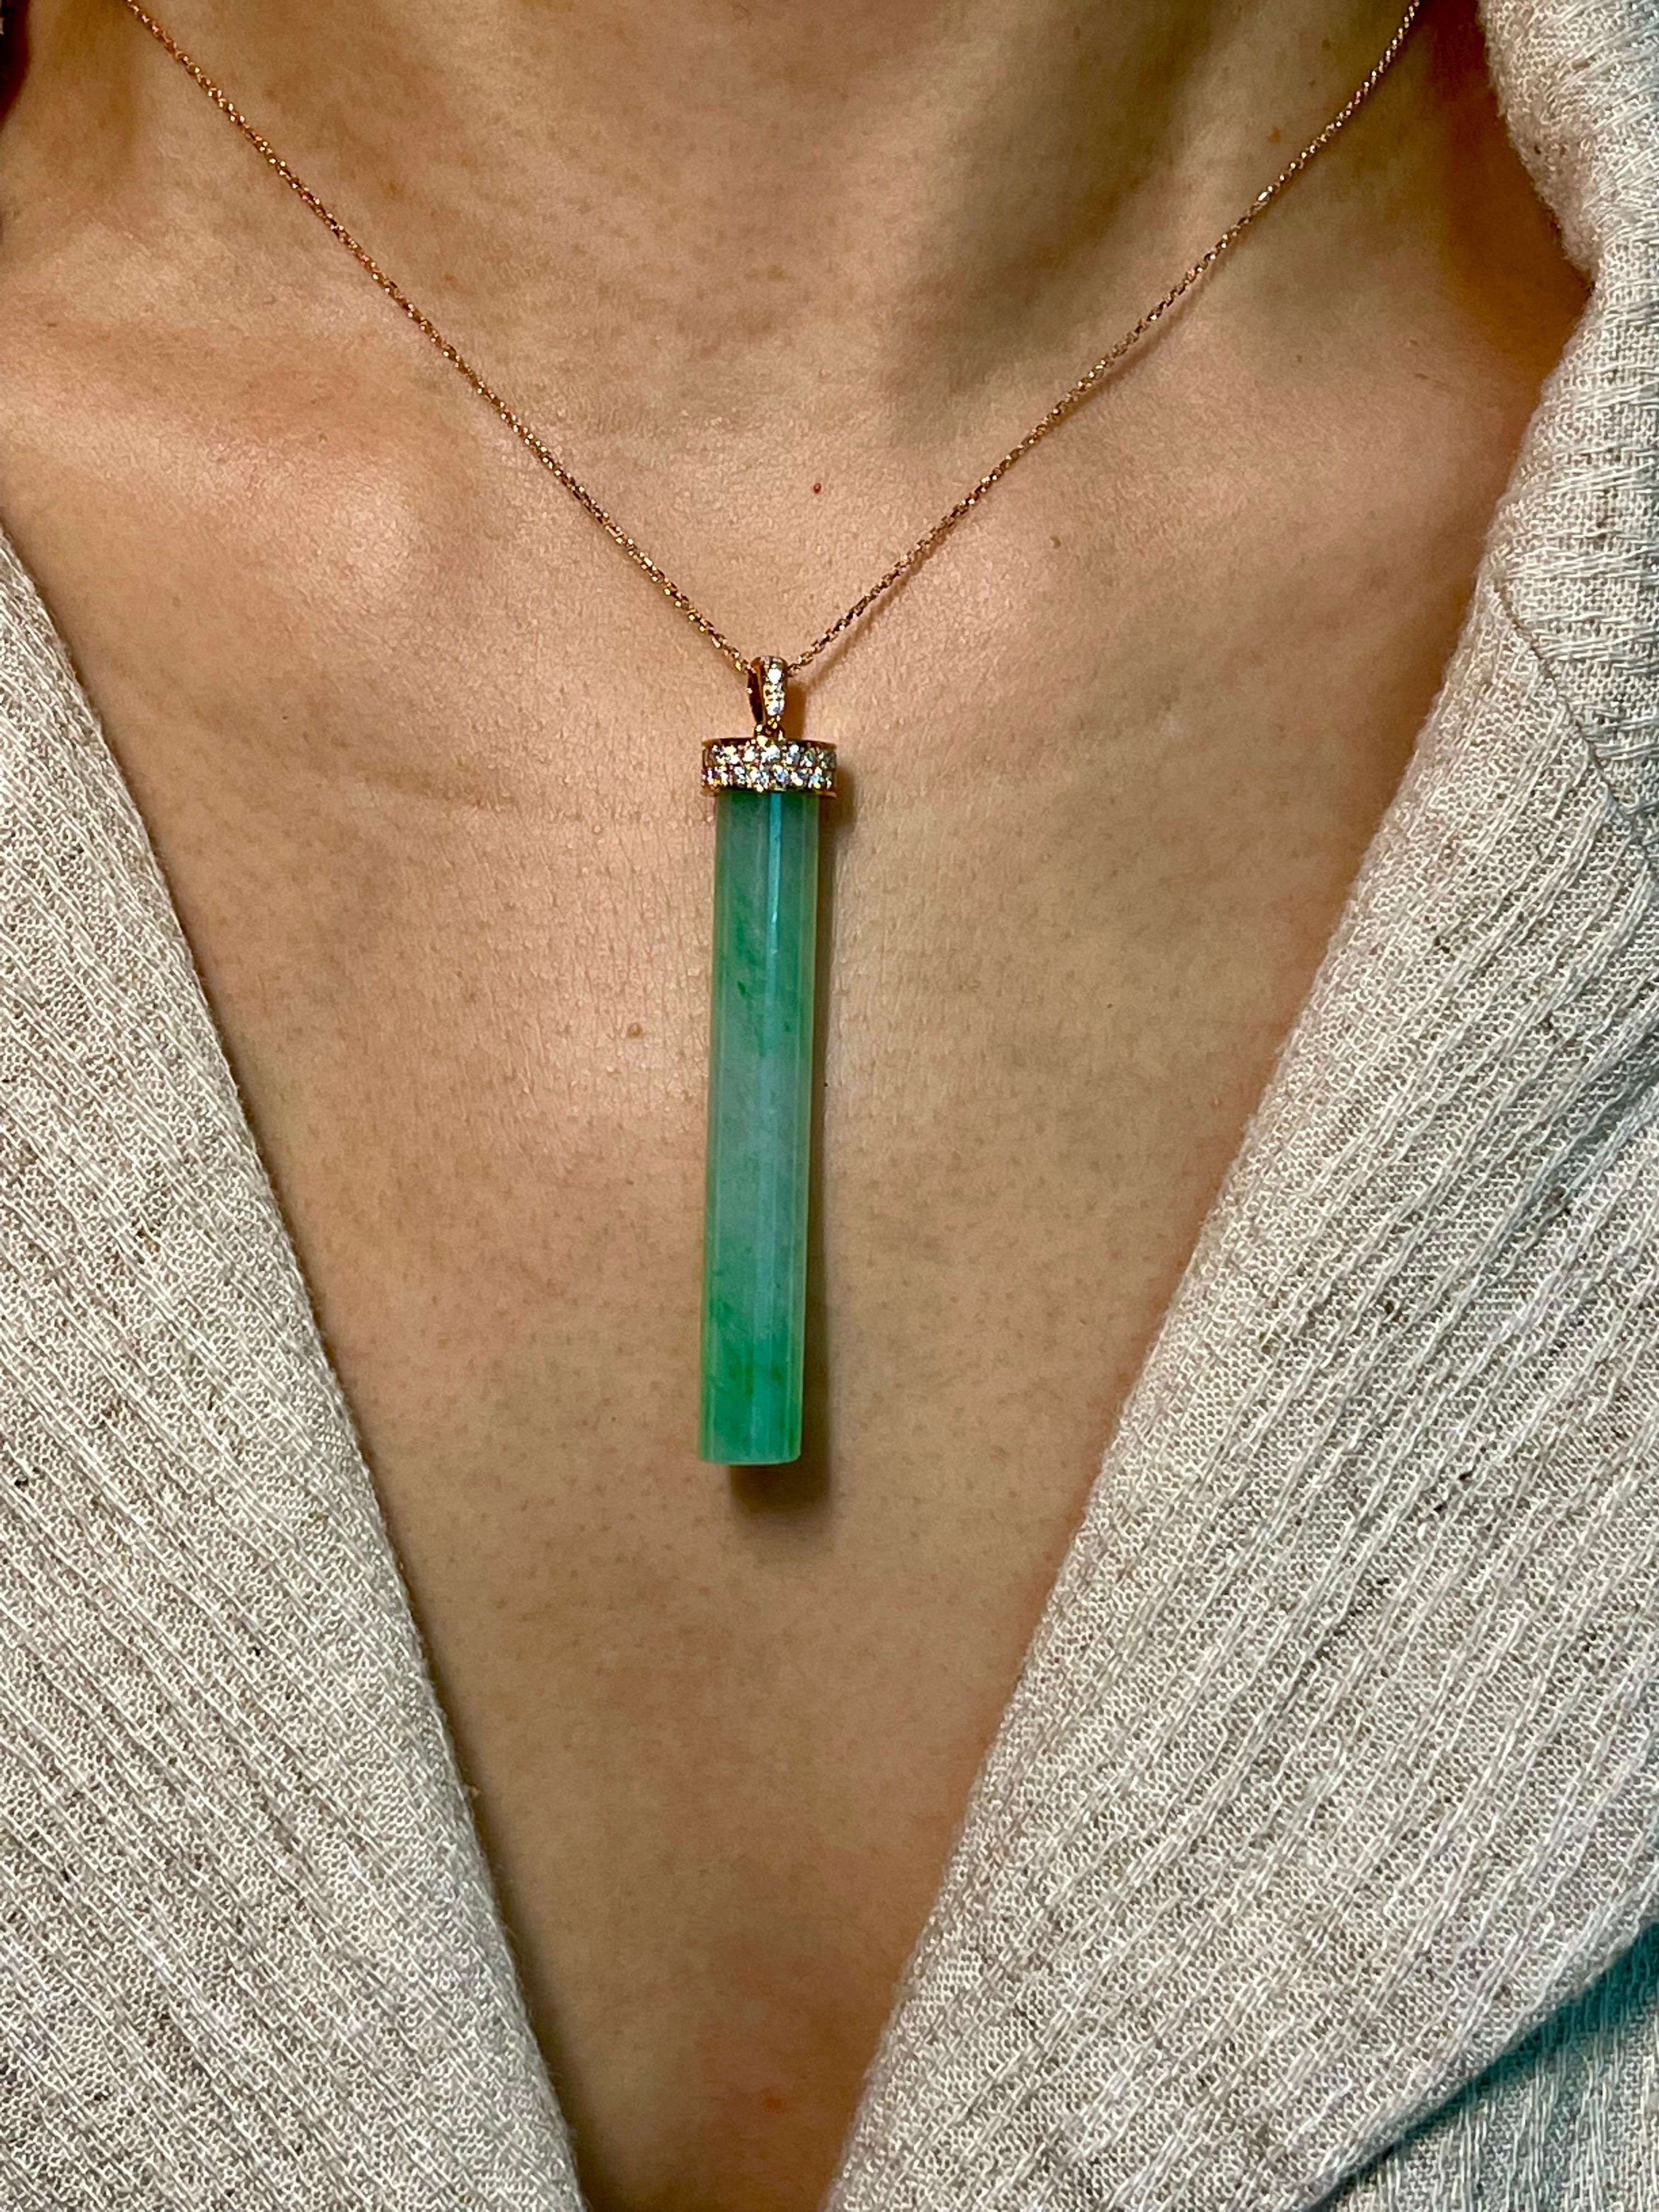 Women's or Men's Certified Jadeite Jade and Diamond Pendant Drop Necklace, Icy Mint Green Jade